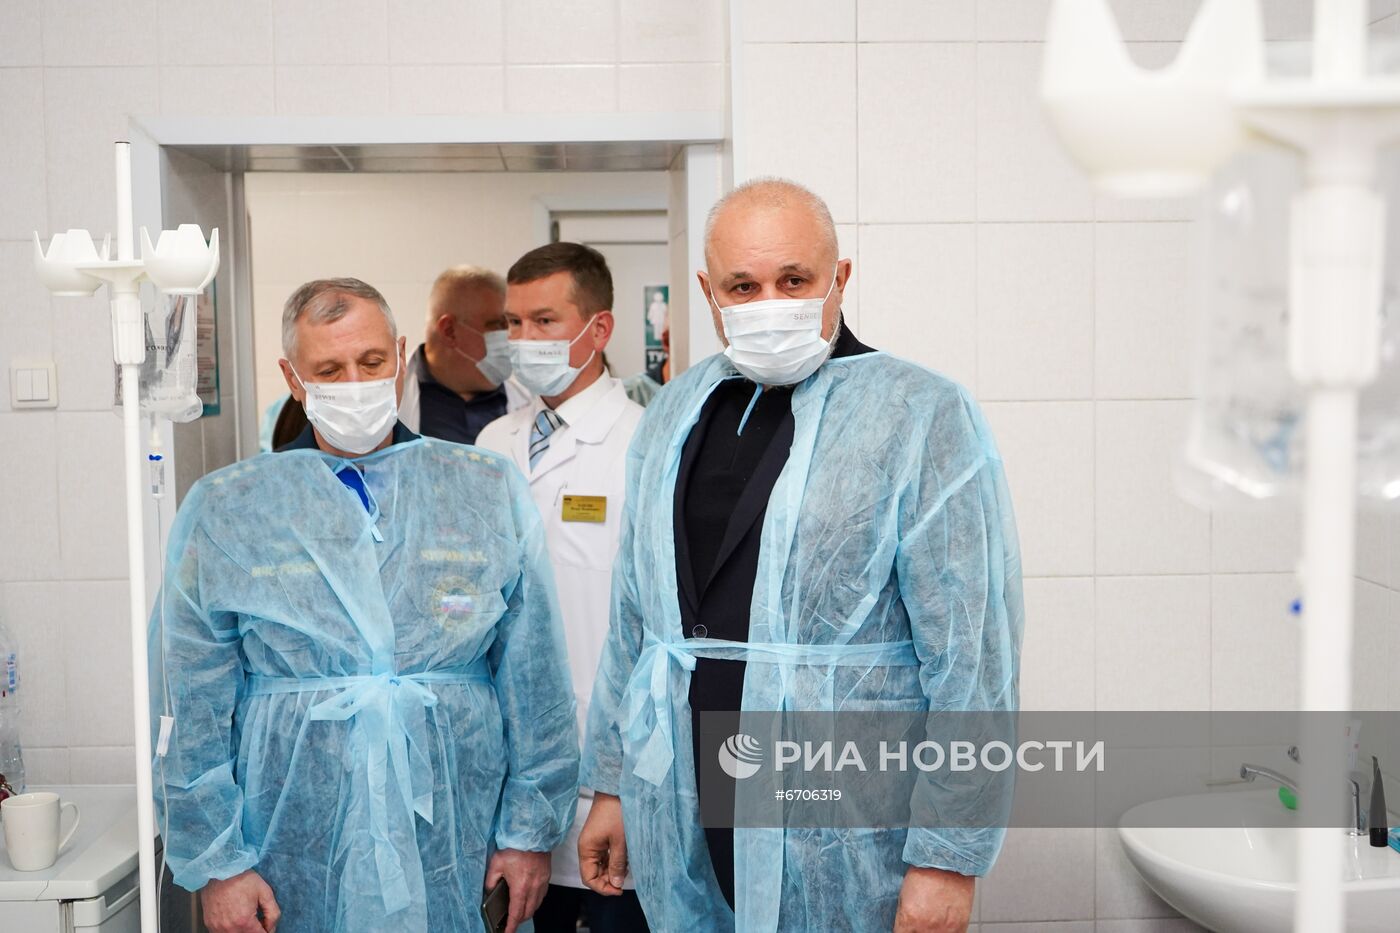 Пострадавшие в аварии на шахте "Листвяжная" в больнице им. Подгорбунского